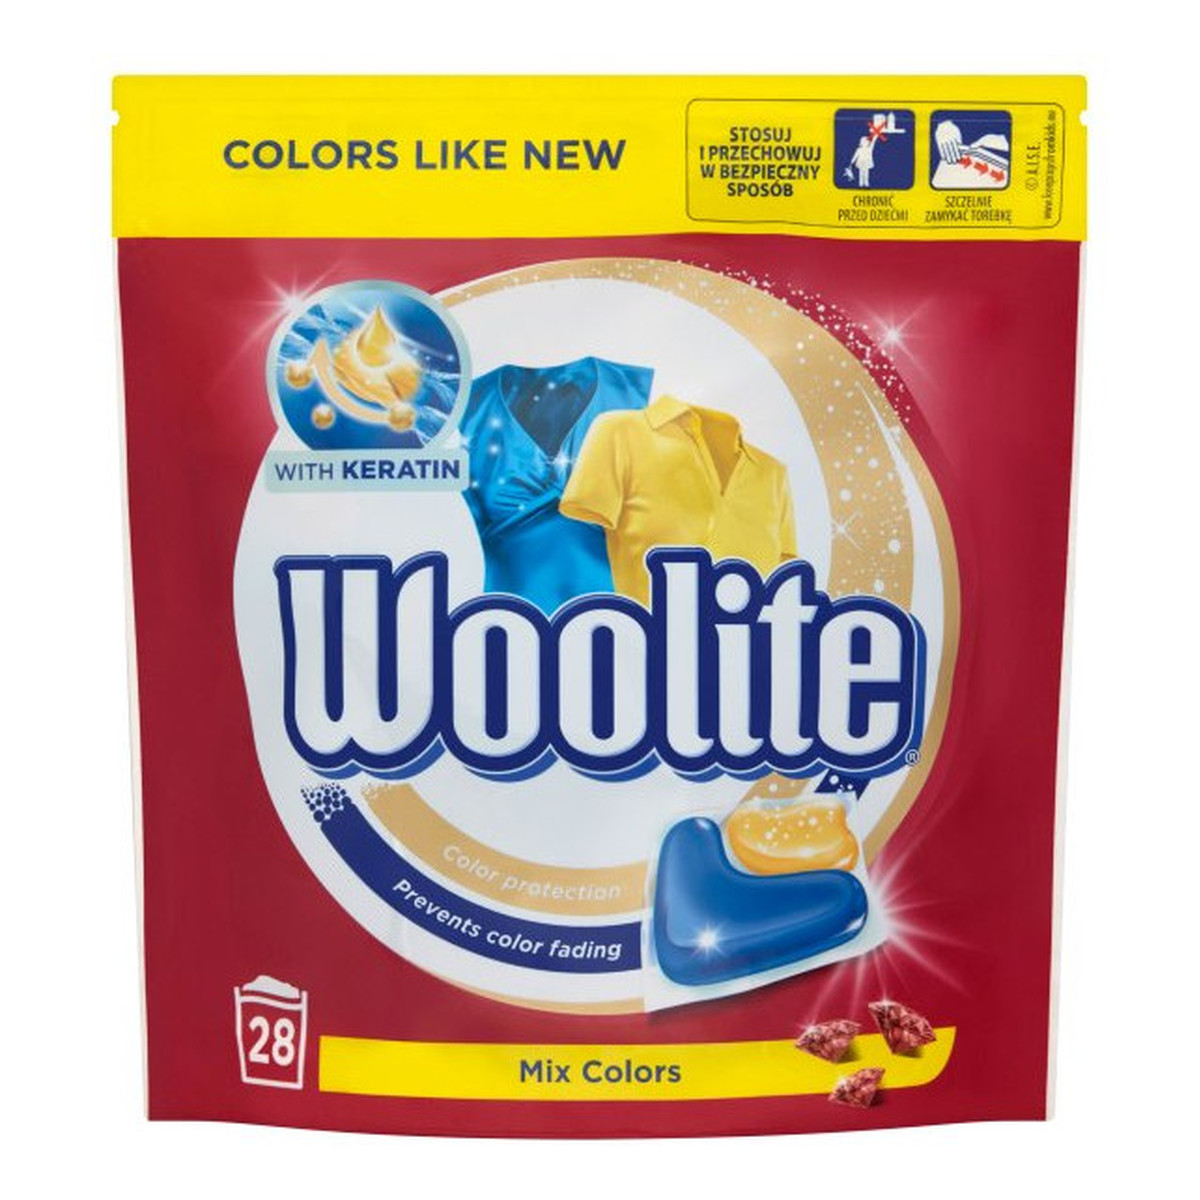 Woolite Mix Colors kapsułki do prania z keratyną 28szt 616g